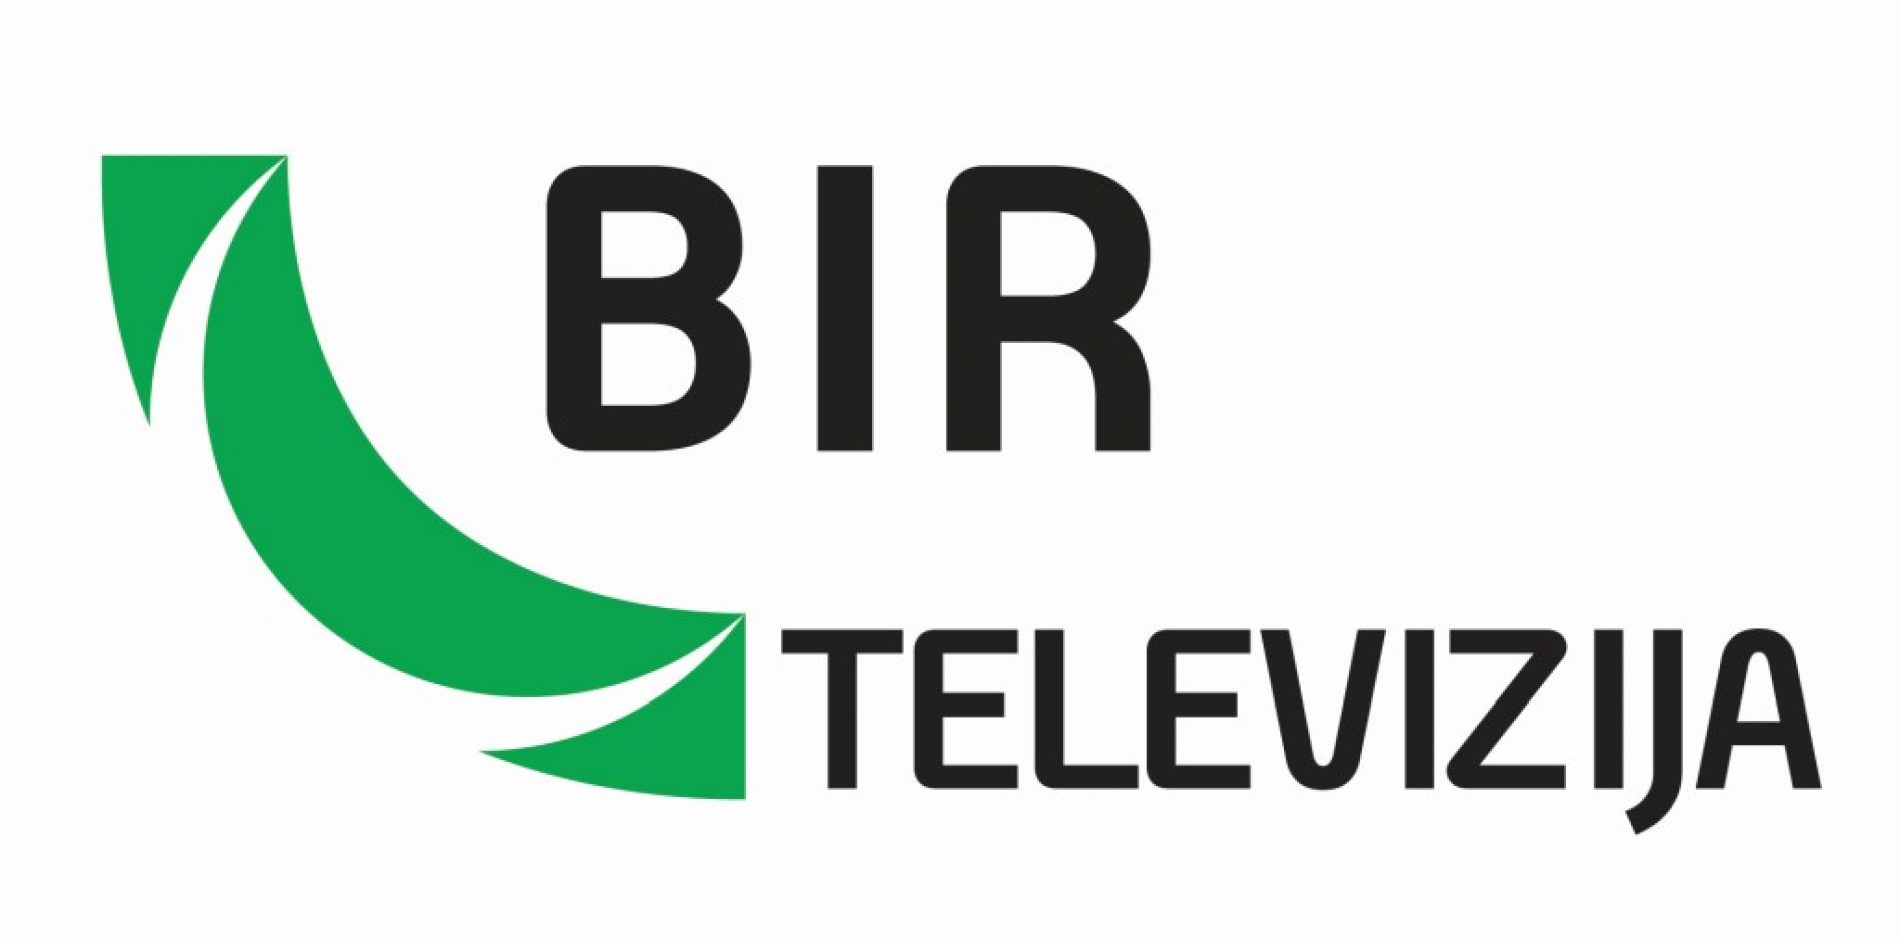 Početkom ramazana počinje s radom BIR Televizija